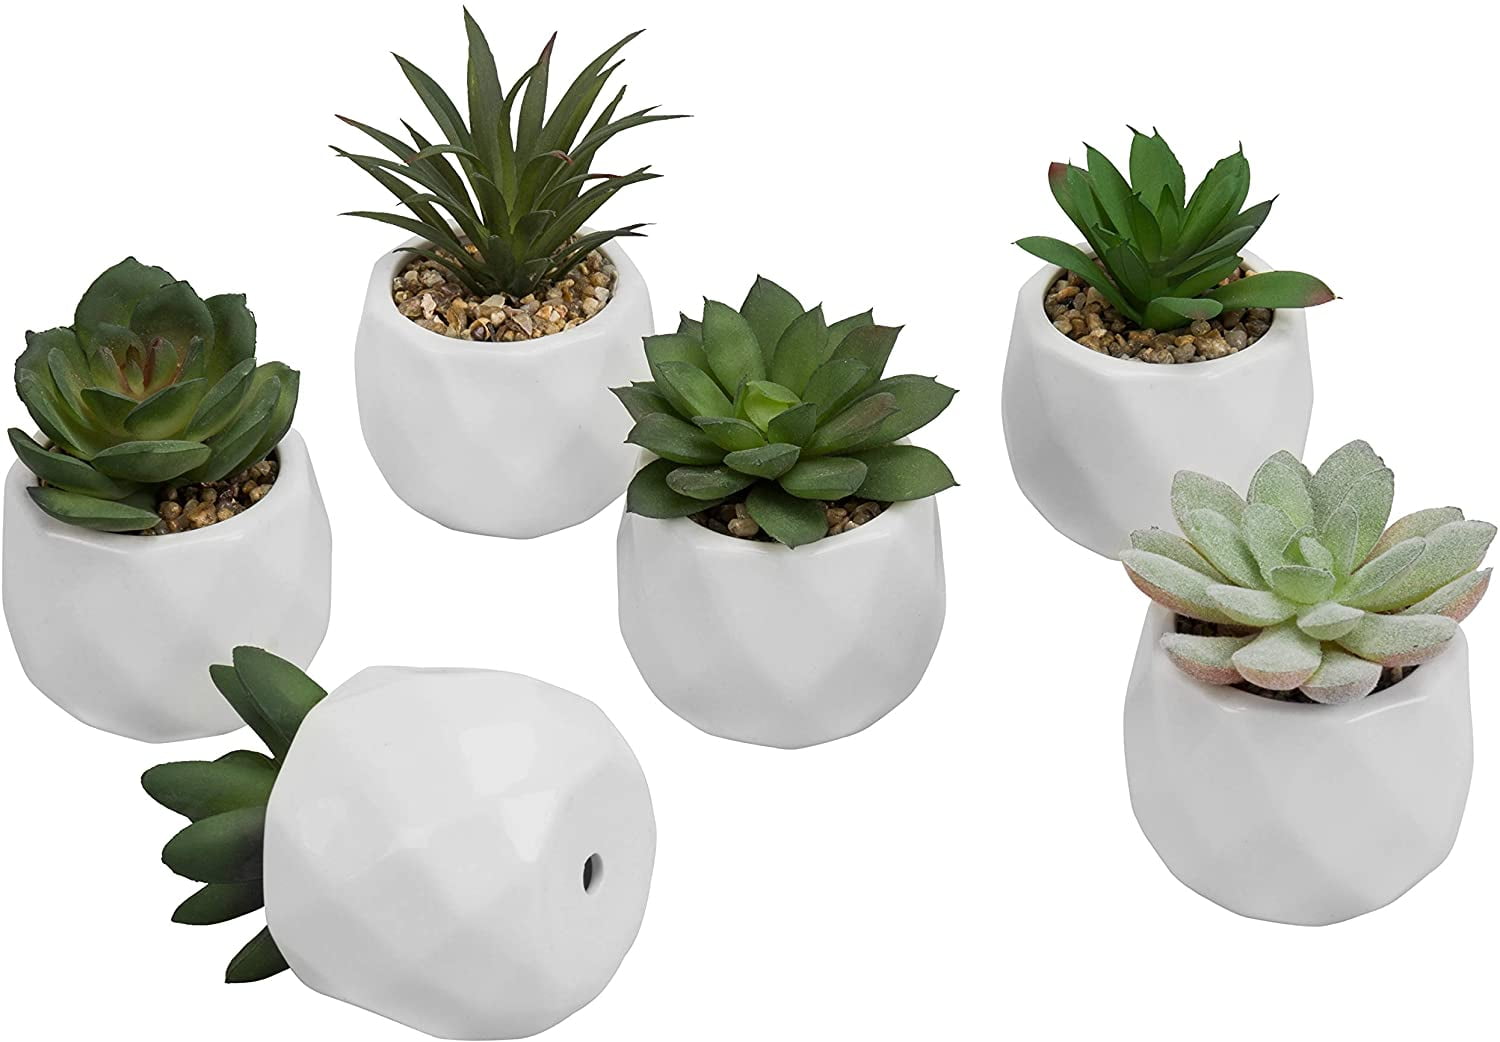 Home Decoration or Desk Plant 6pc Mini Artificial Succulent Plant Include Pots 